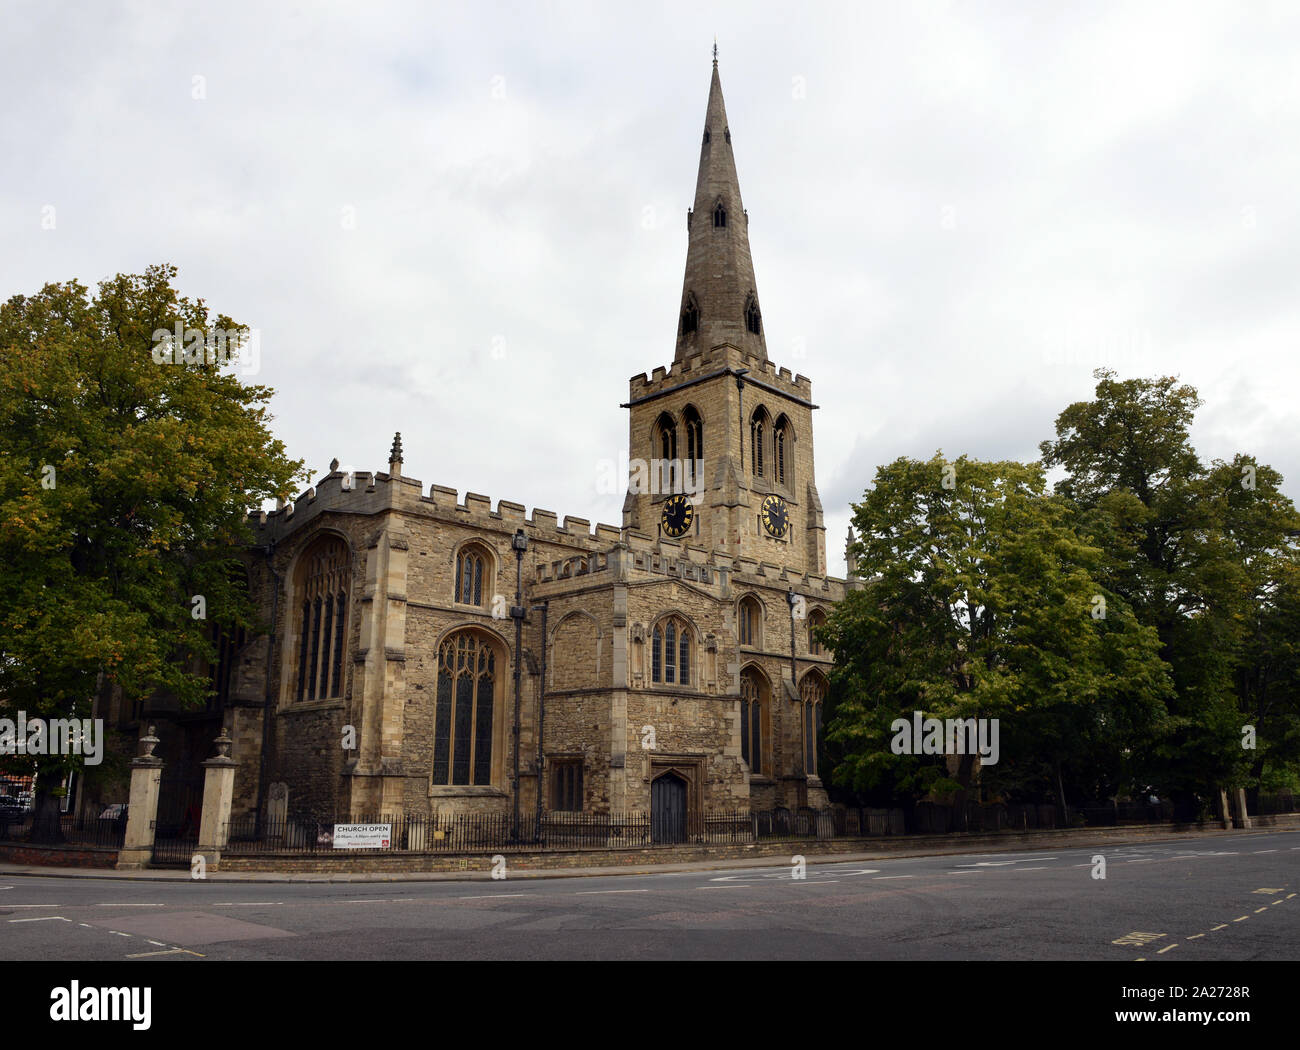 St Paul's Kirche, Bedford, eine Pfarrkirche in der katholischen Tradition der Kirche von England, im Herzen des belebten Marktes Stadt. Stockfoto